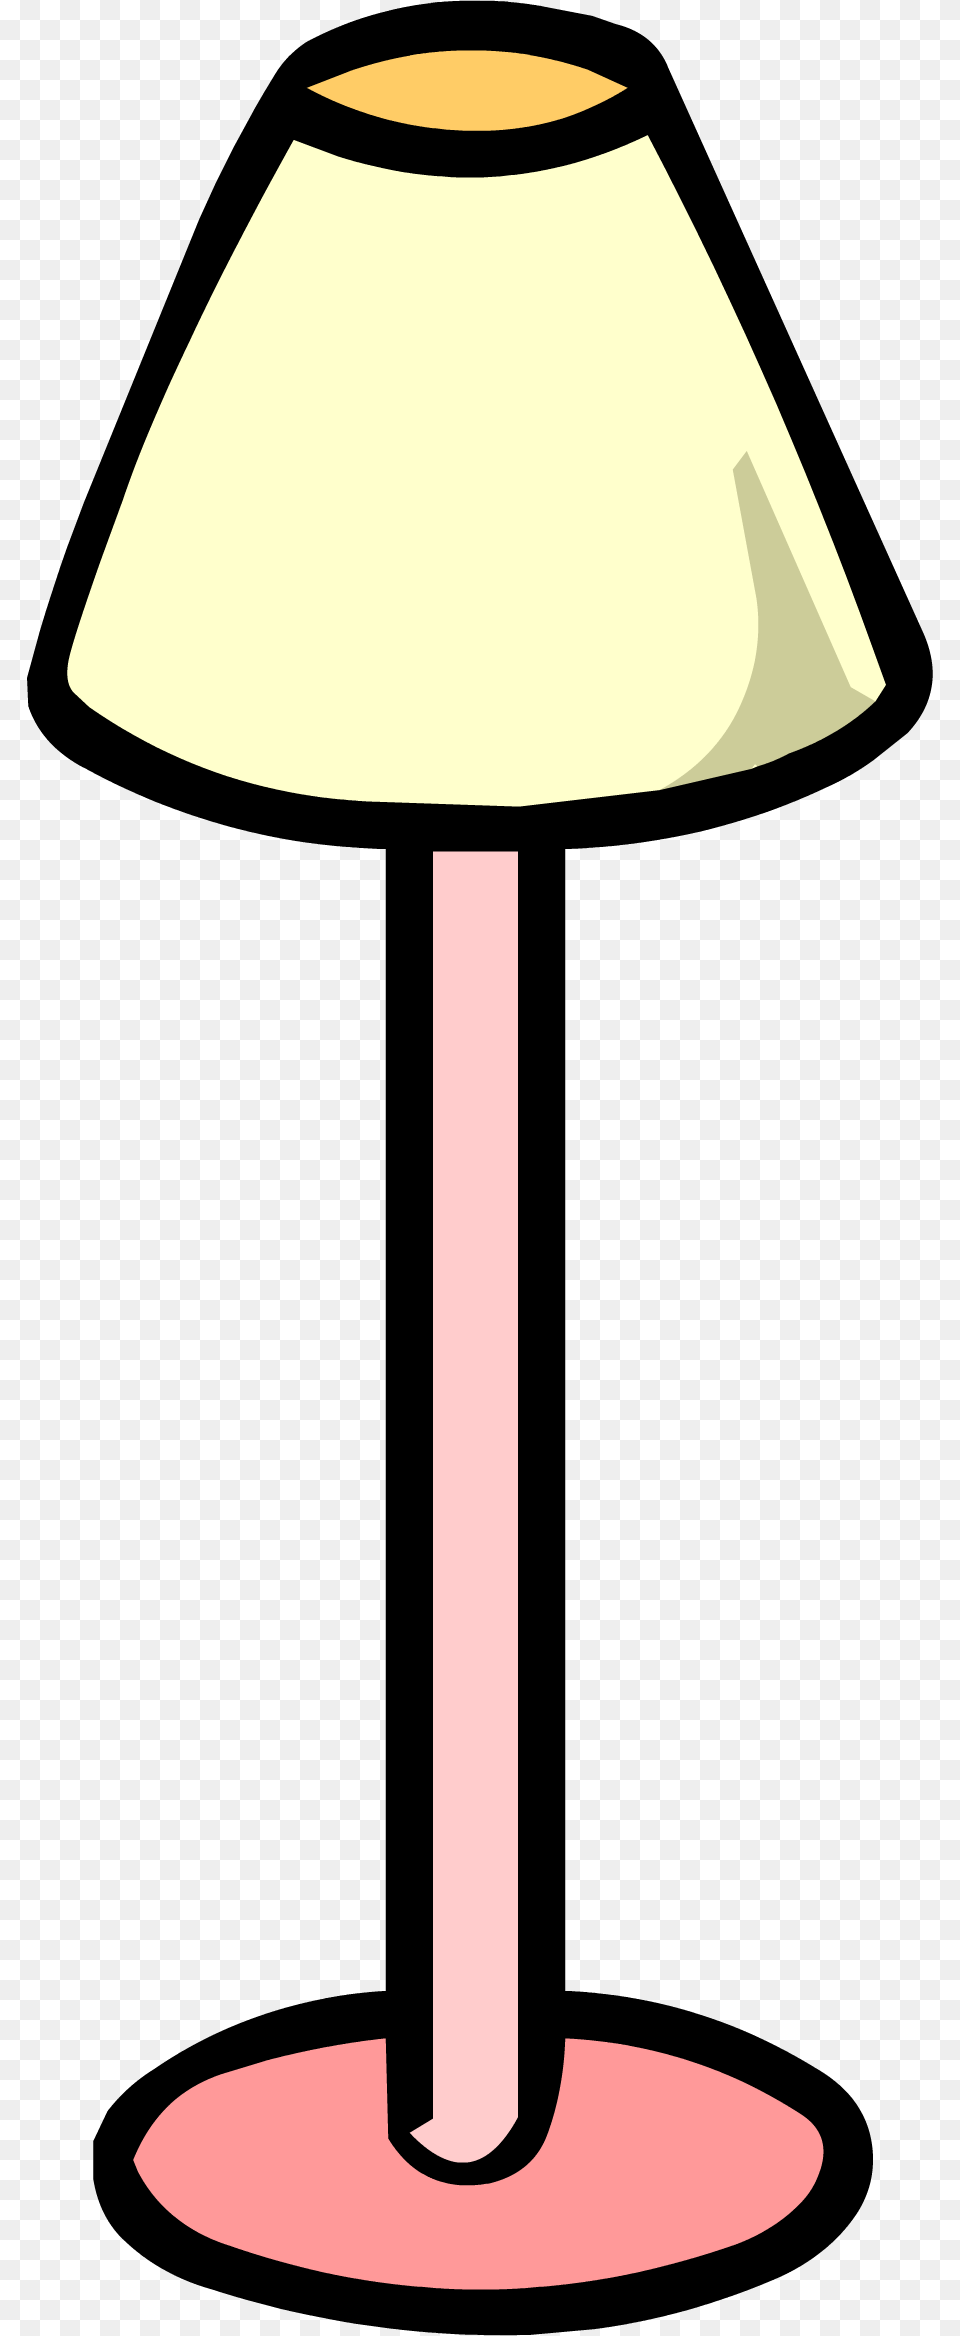 Pink Lamp Lamparas Club Penguin, Lampshade, Table Lamp, Cross, Symbol Png